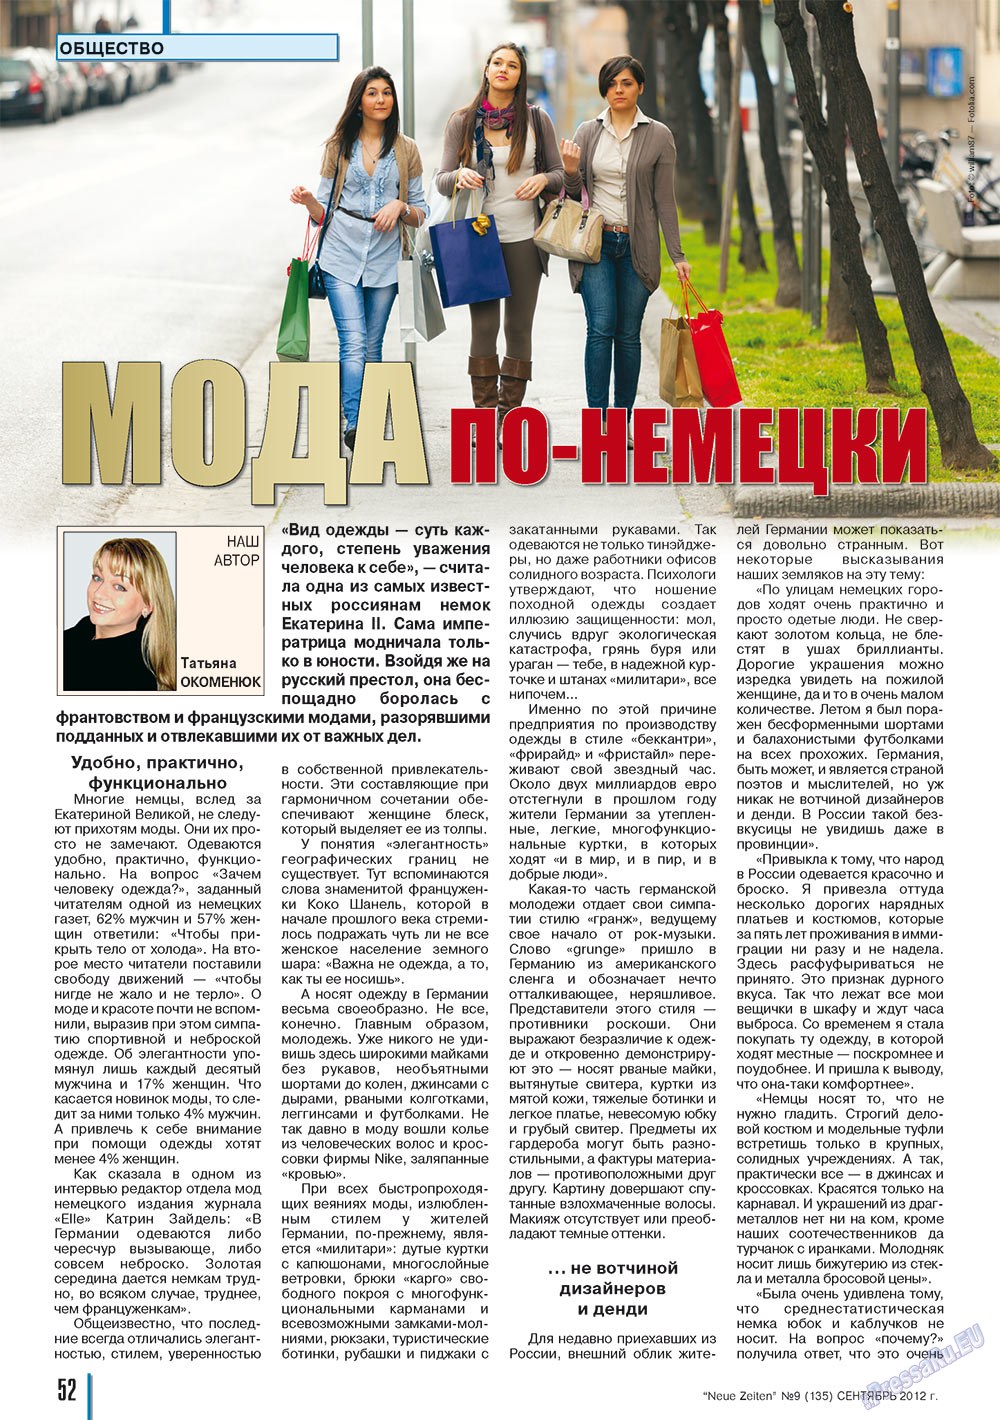 Neue Zeiten, журнал. 2012 №9 стр.52